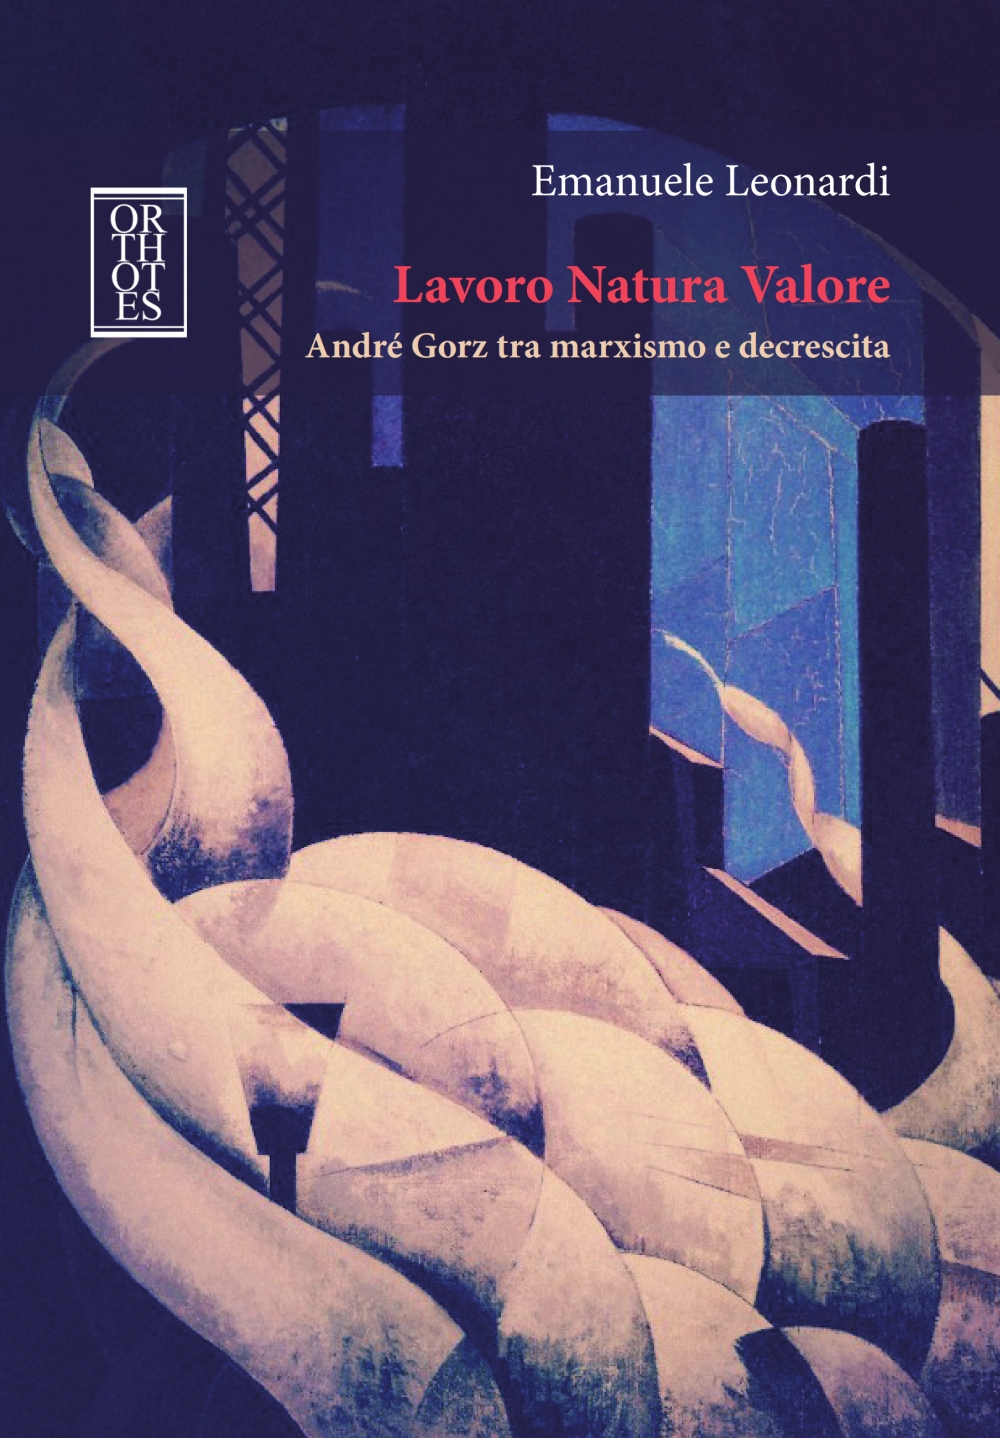 Radicalizing the Ecological Transition.  Reflections on “Lavoro Natura Valore: André Gorz tra marxismo e decrescita” by Emanuele Leonardi